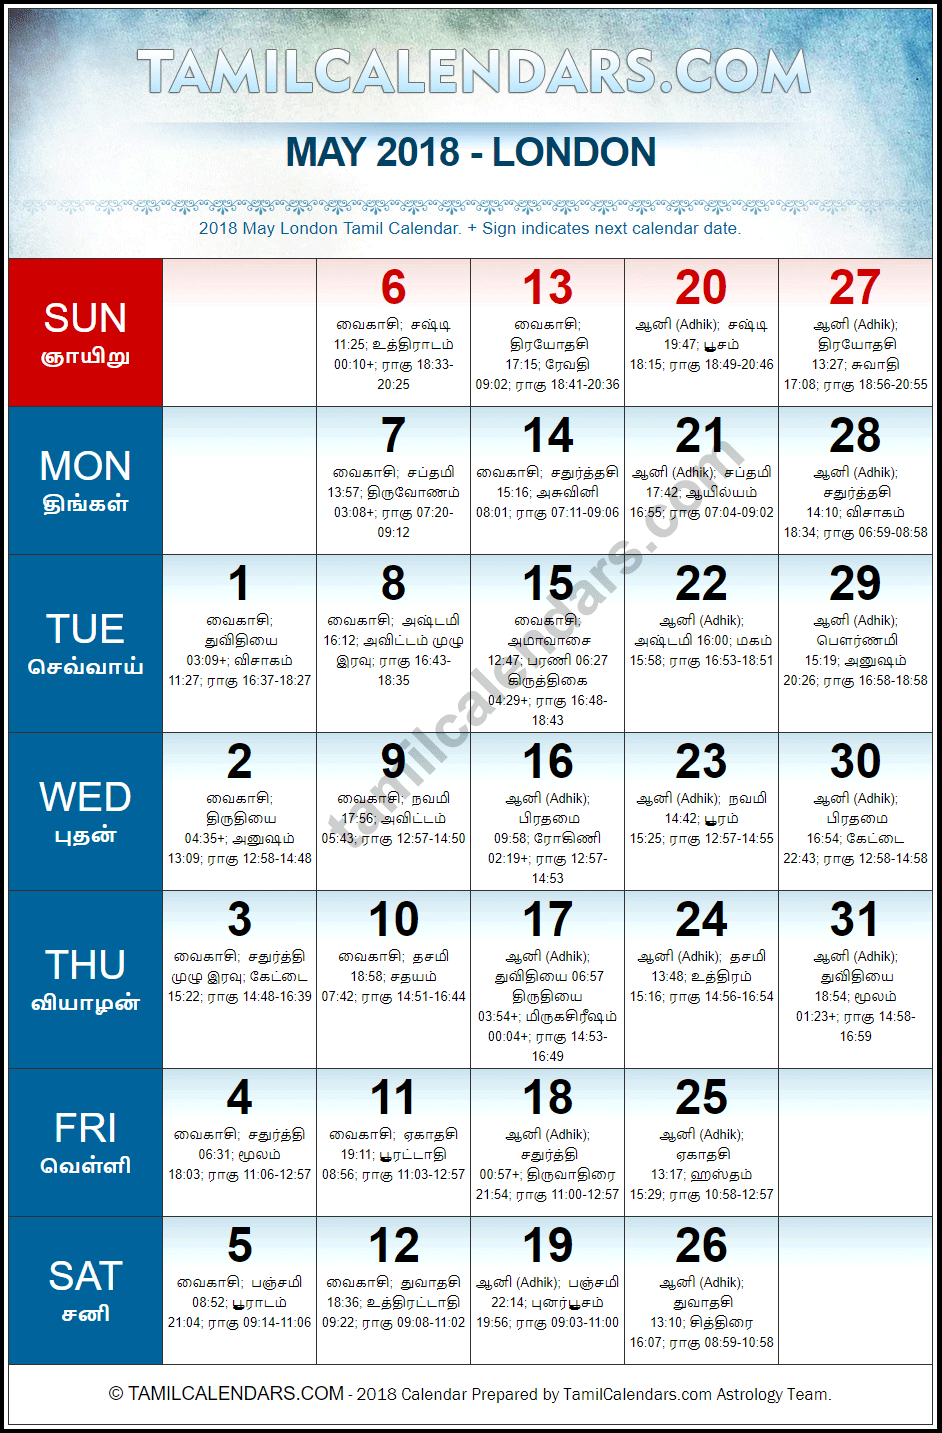 May 2018 Tamil Calendar for London, UK